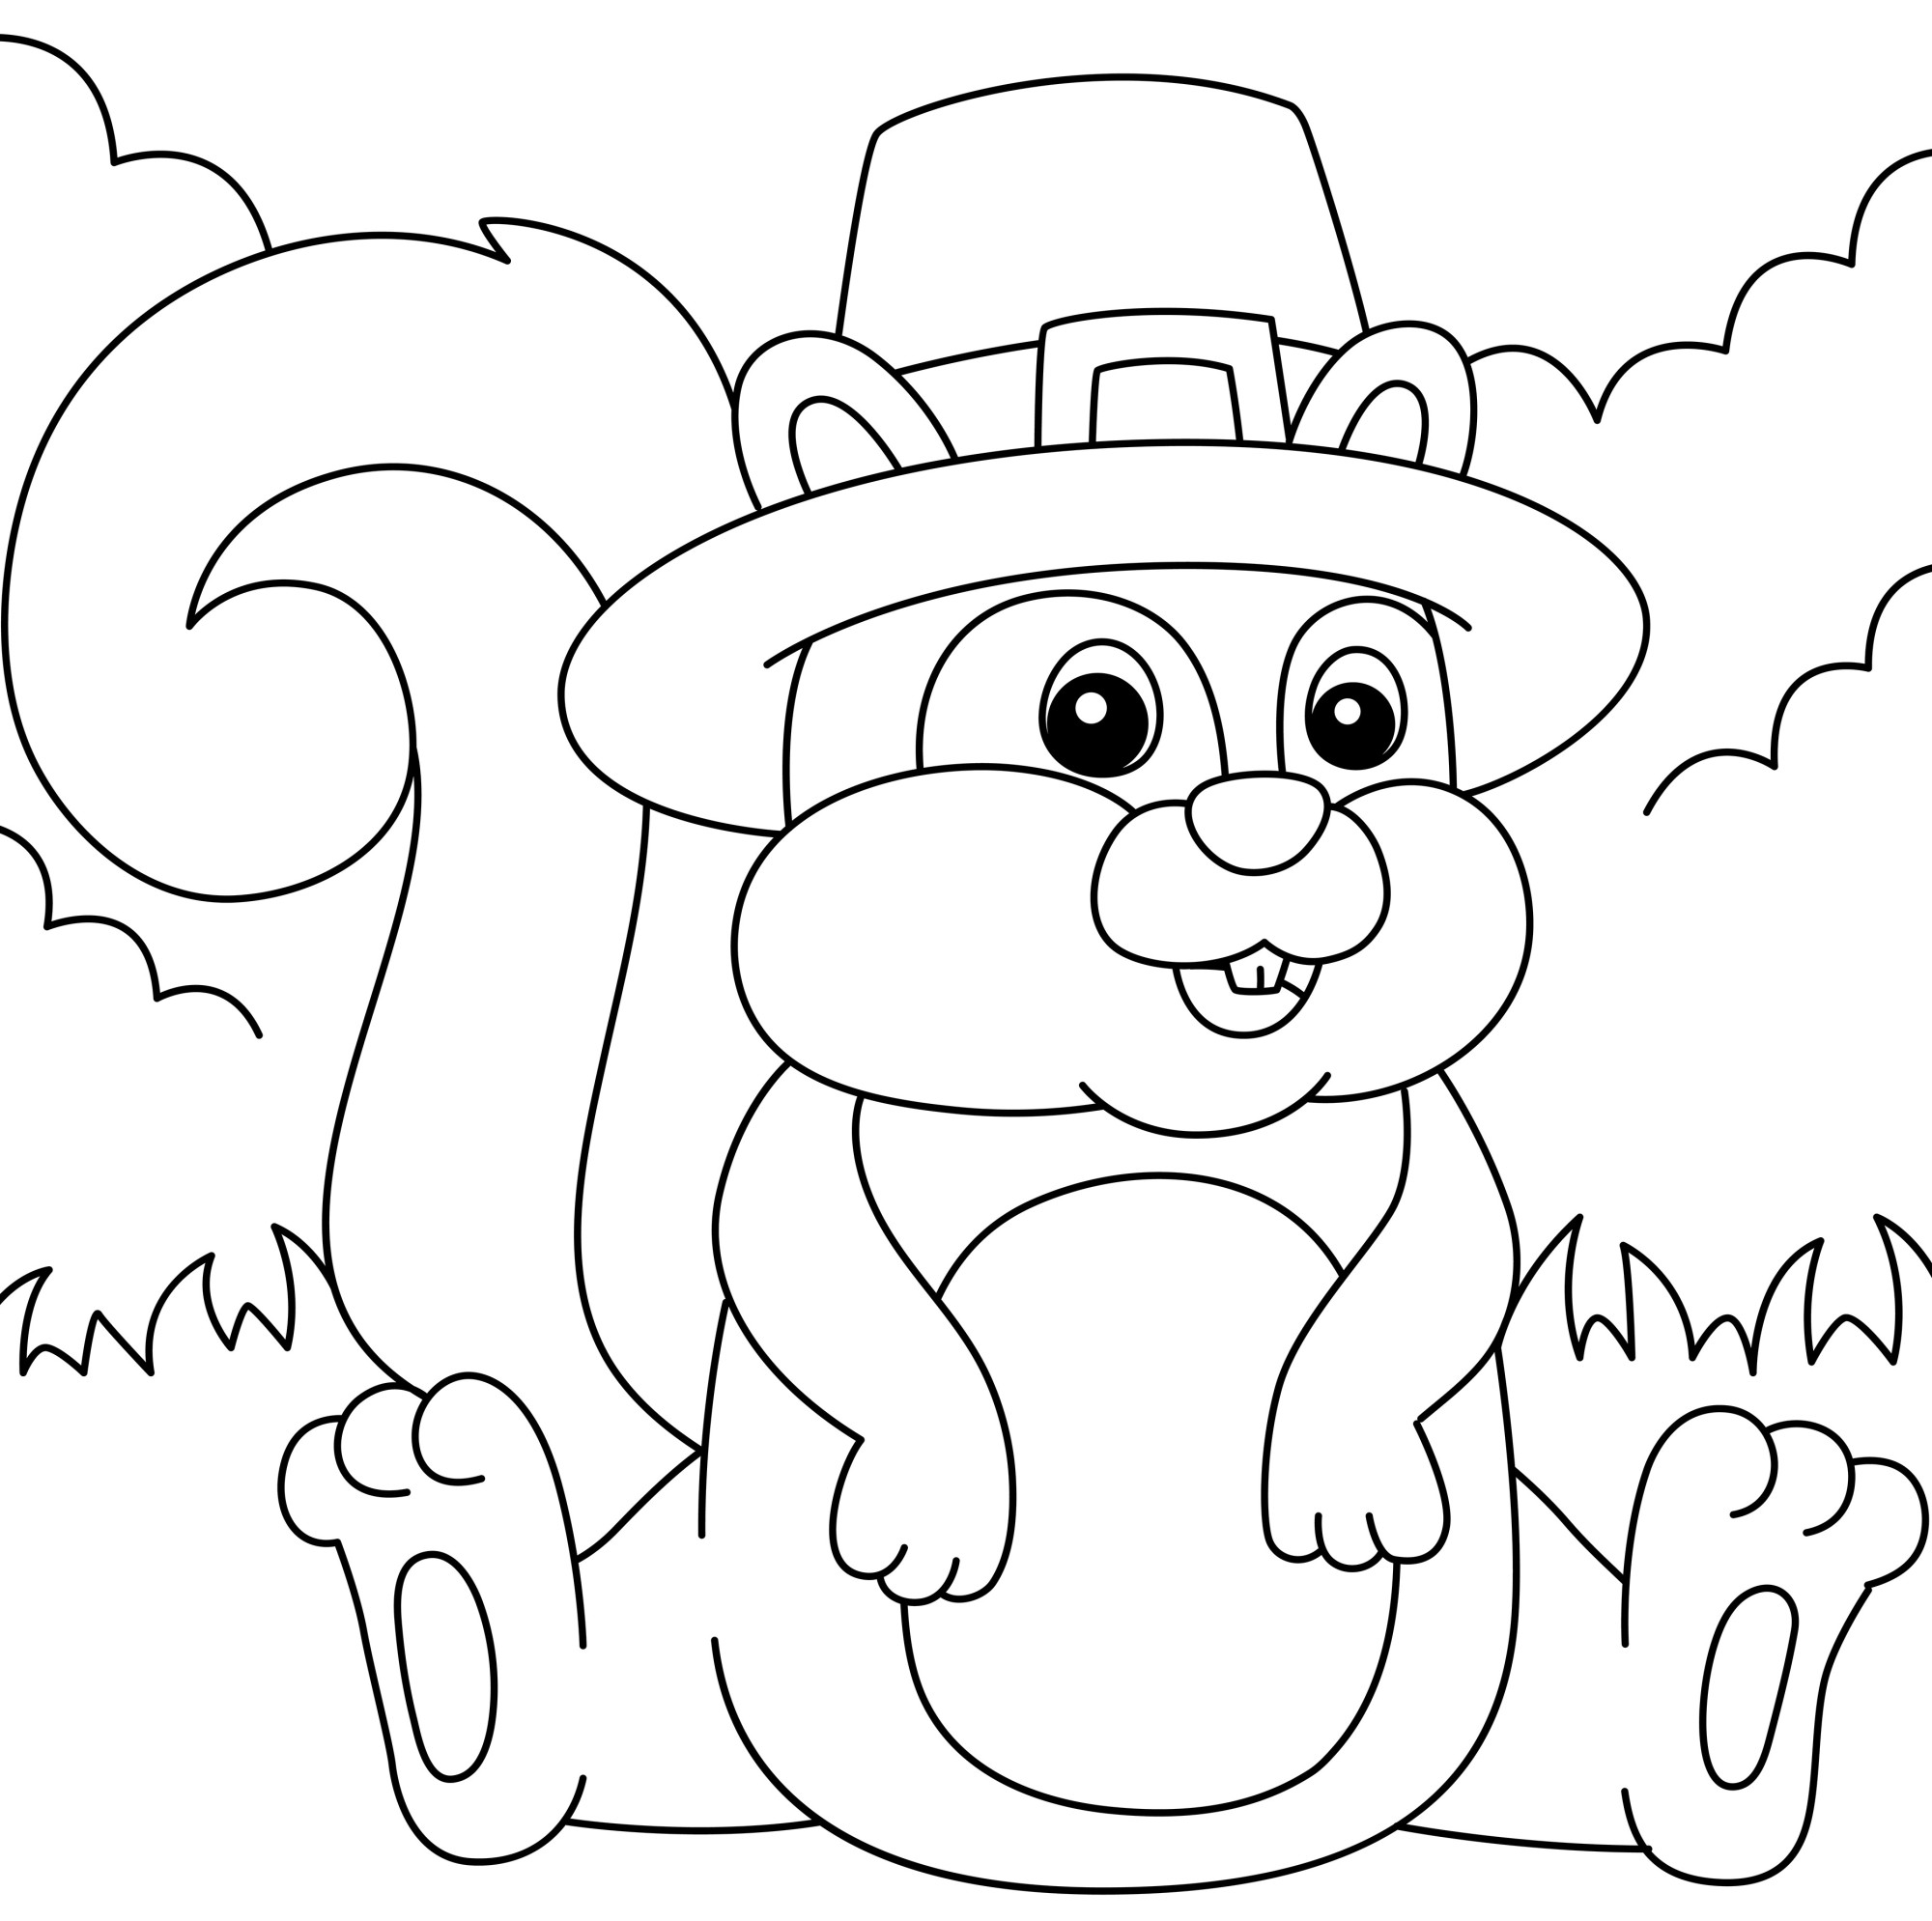 Раскраска для детей: бельчонок в шляпе сидит в лесу